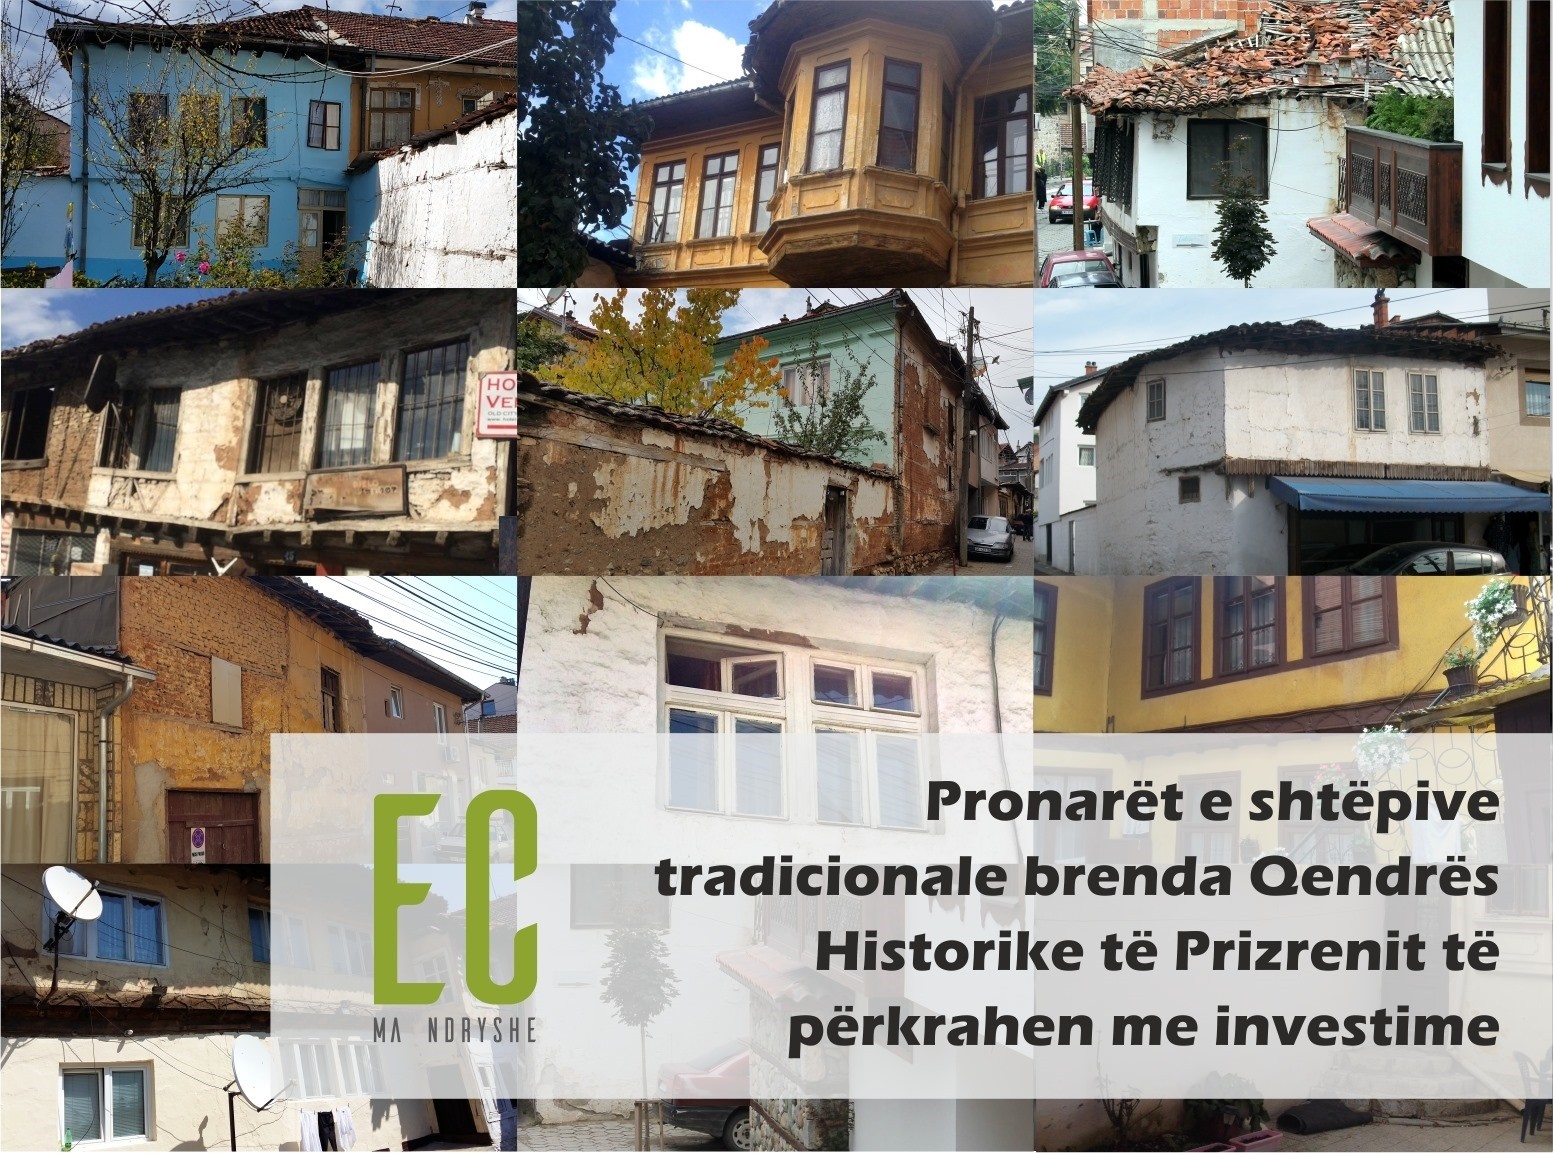 Pronarët e shtëpive brenda Qendrës Historike të Prizrenit duhet të përkrahen  